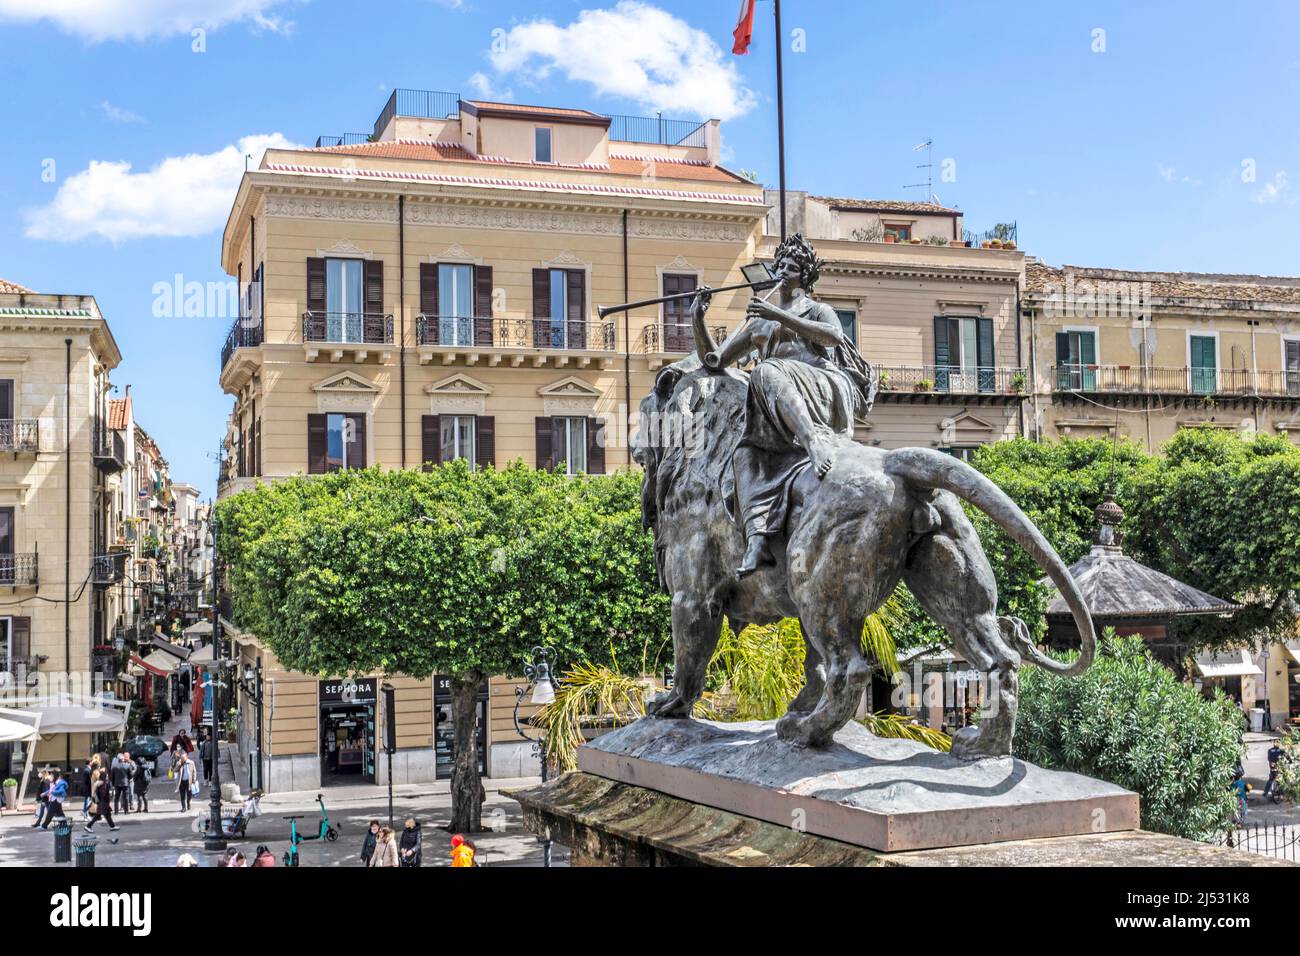 La statue en bronze d'un lion, montée par une figure féminine jouant une corne, devant le Teatro Massimo à Palerme, Sicile, Italie. Sculpteur Mario Rutelli. Banque D'Images